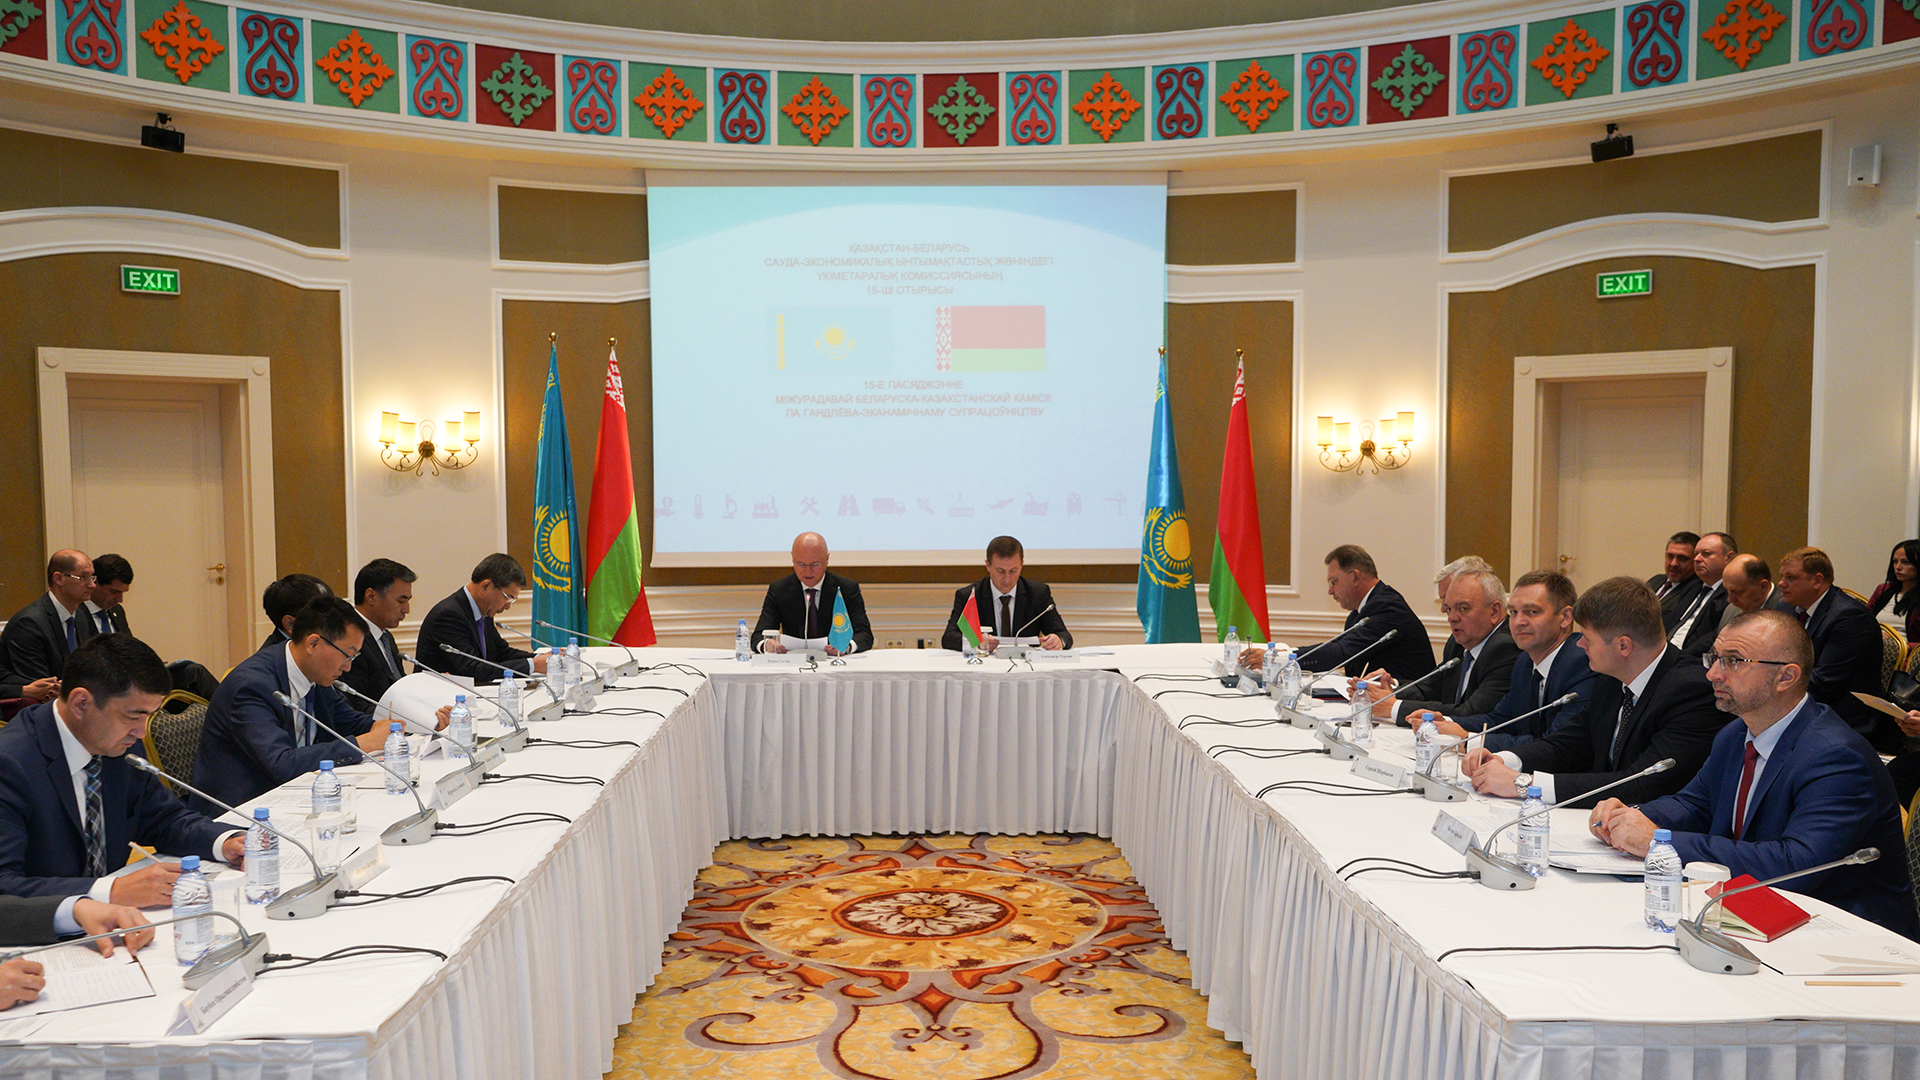 Kazakhstan-Belarus economic cooperation discussed